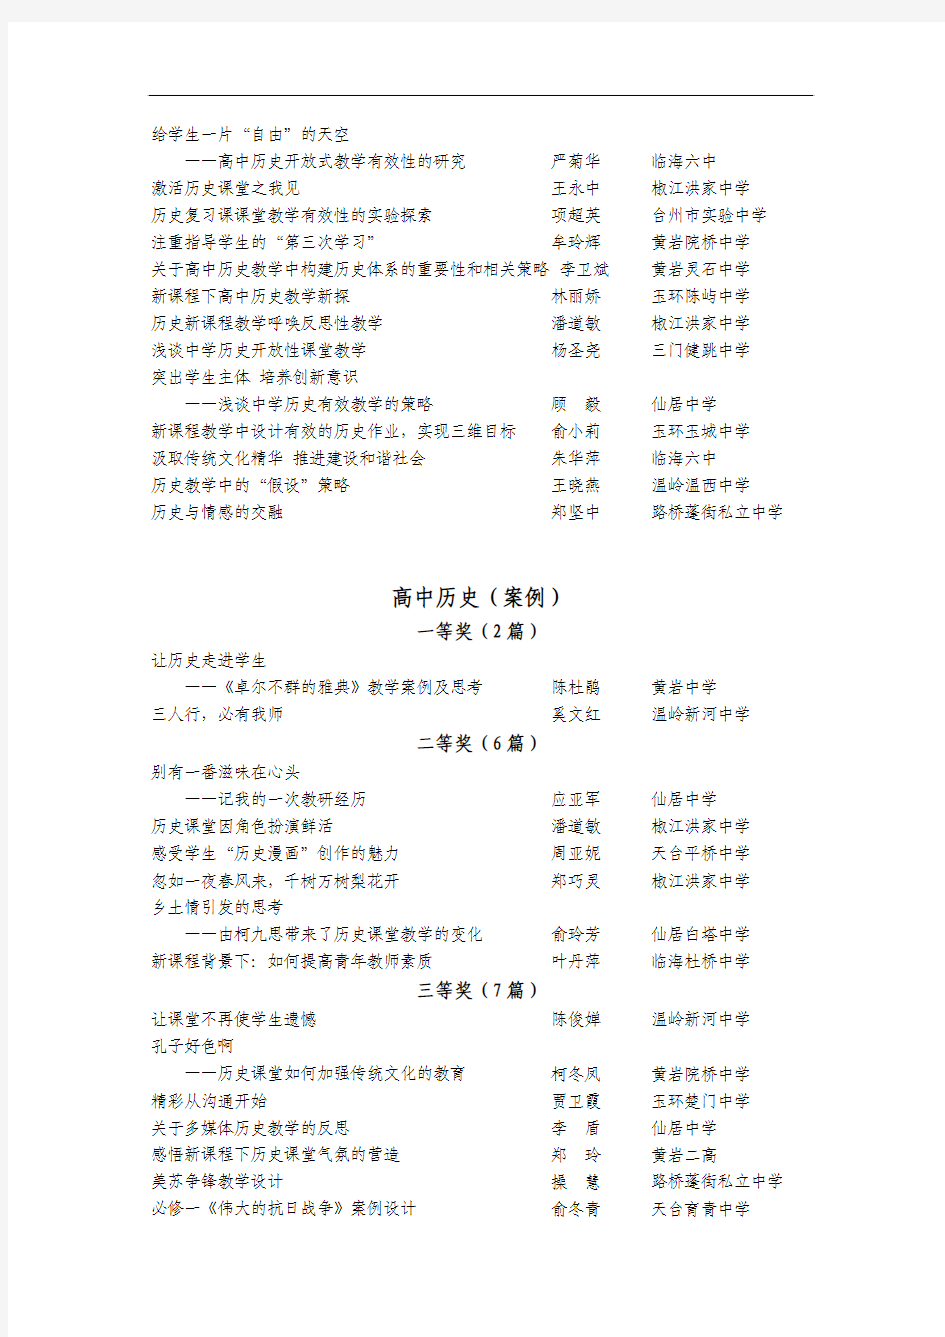 2008年台州市高中历史论文(案例)评比获奖名单